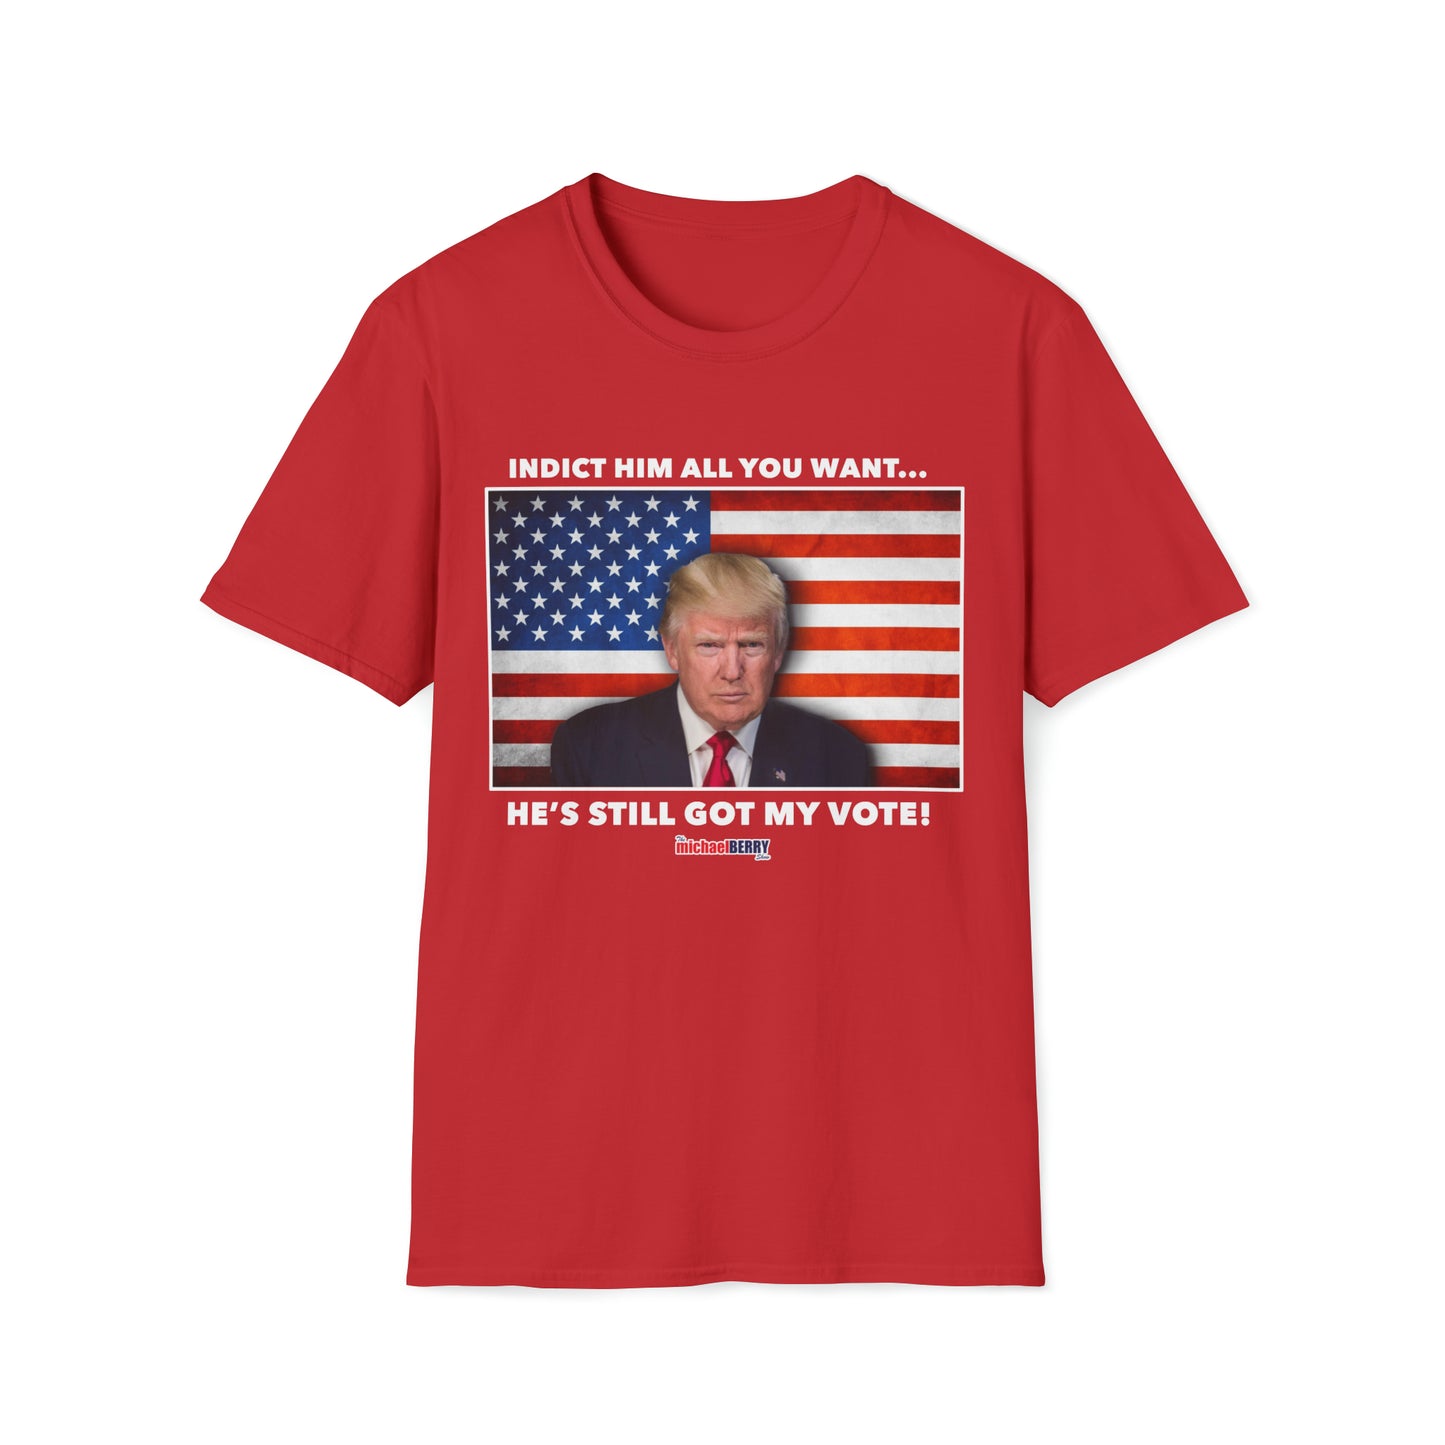 He's Still Got my Vote - T-Shirt